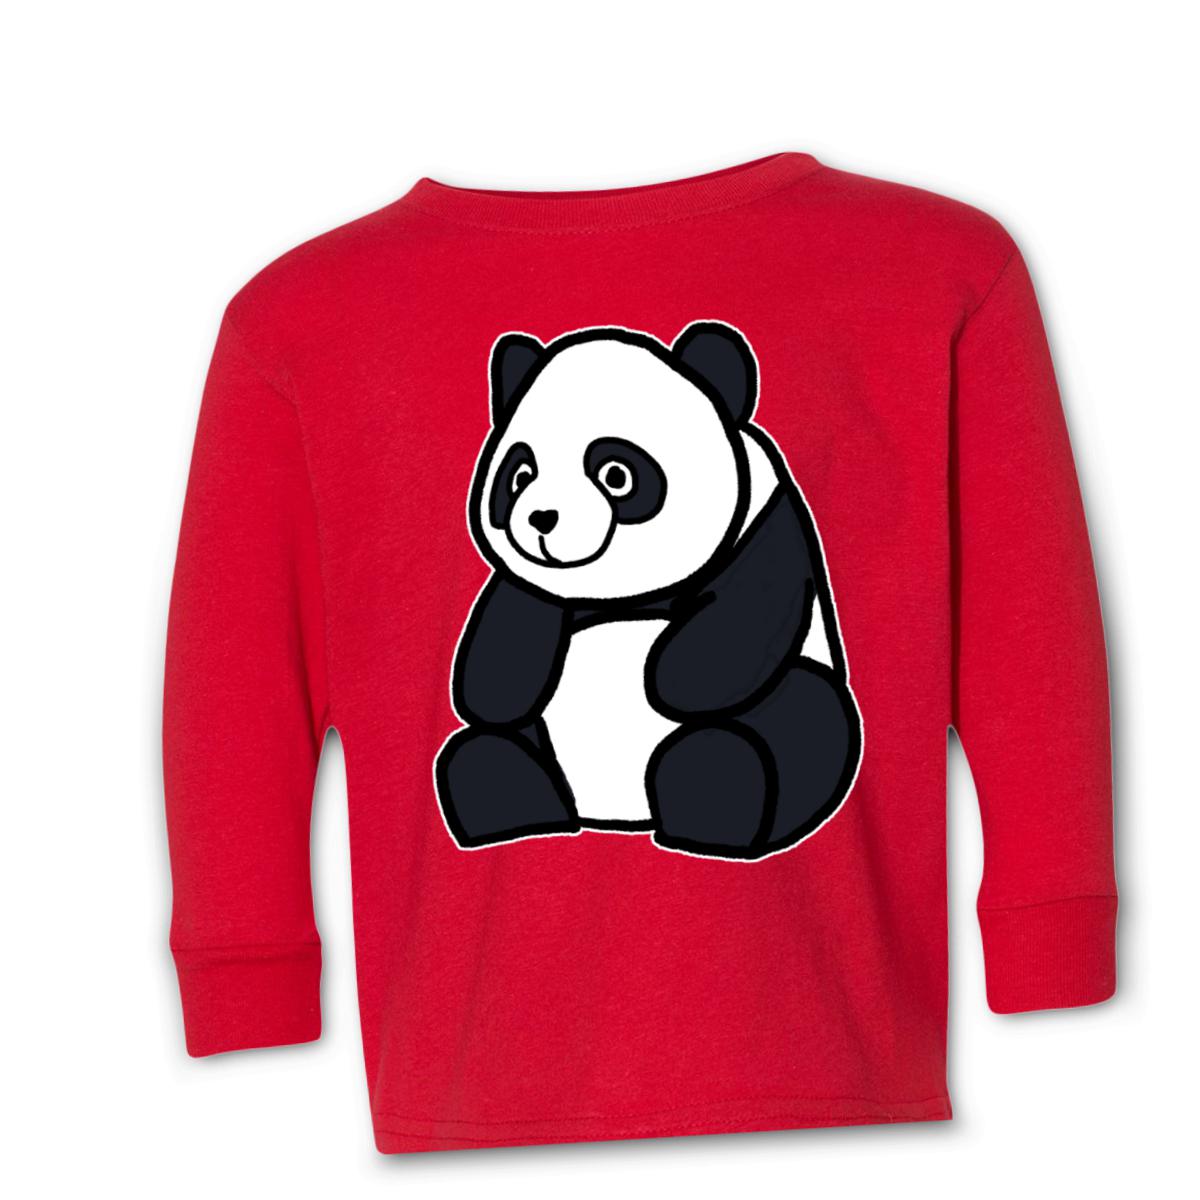 Panda Kid's Long Sleeve Tee Large red